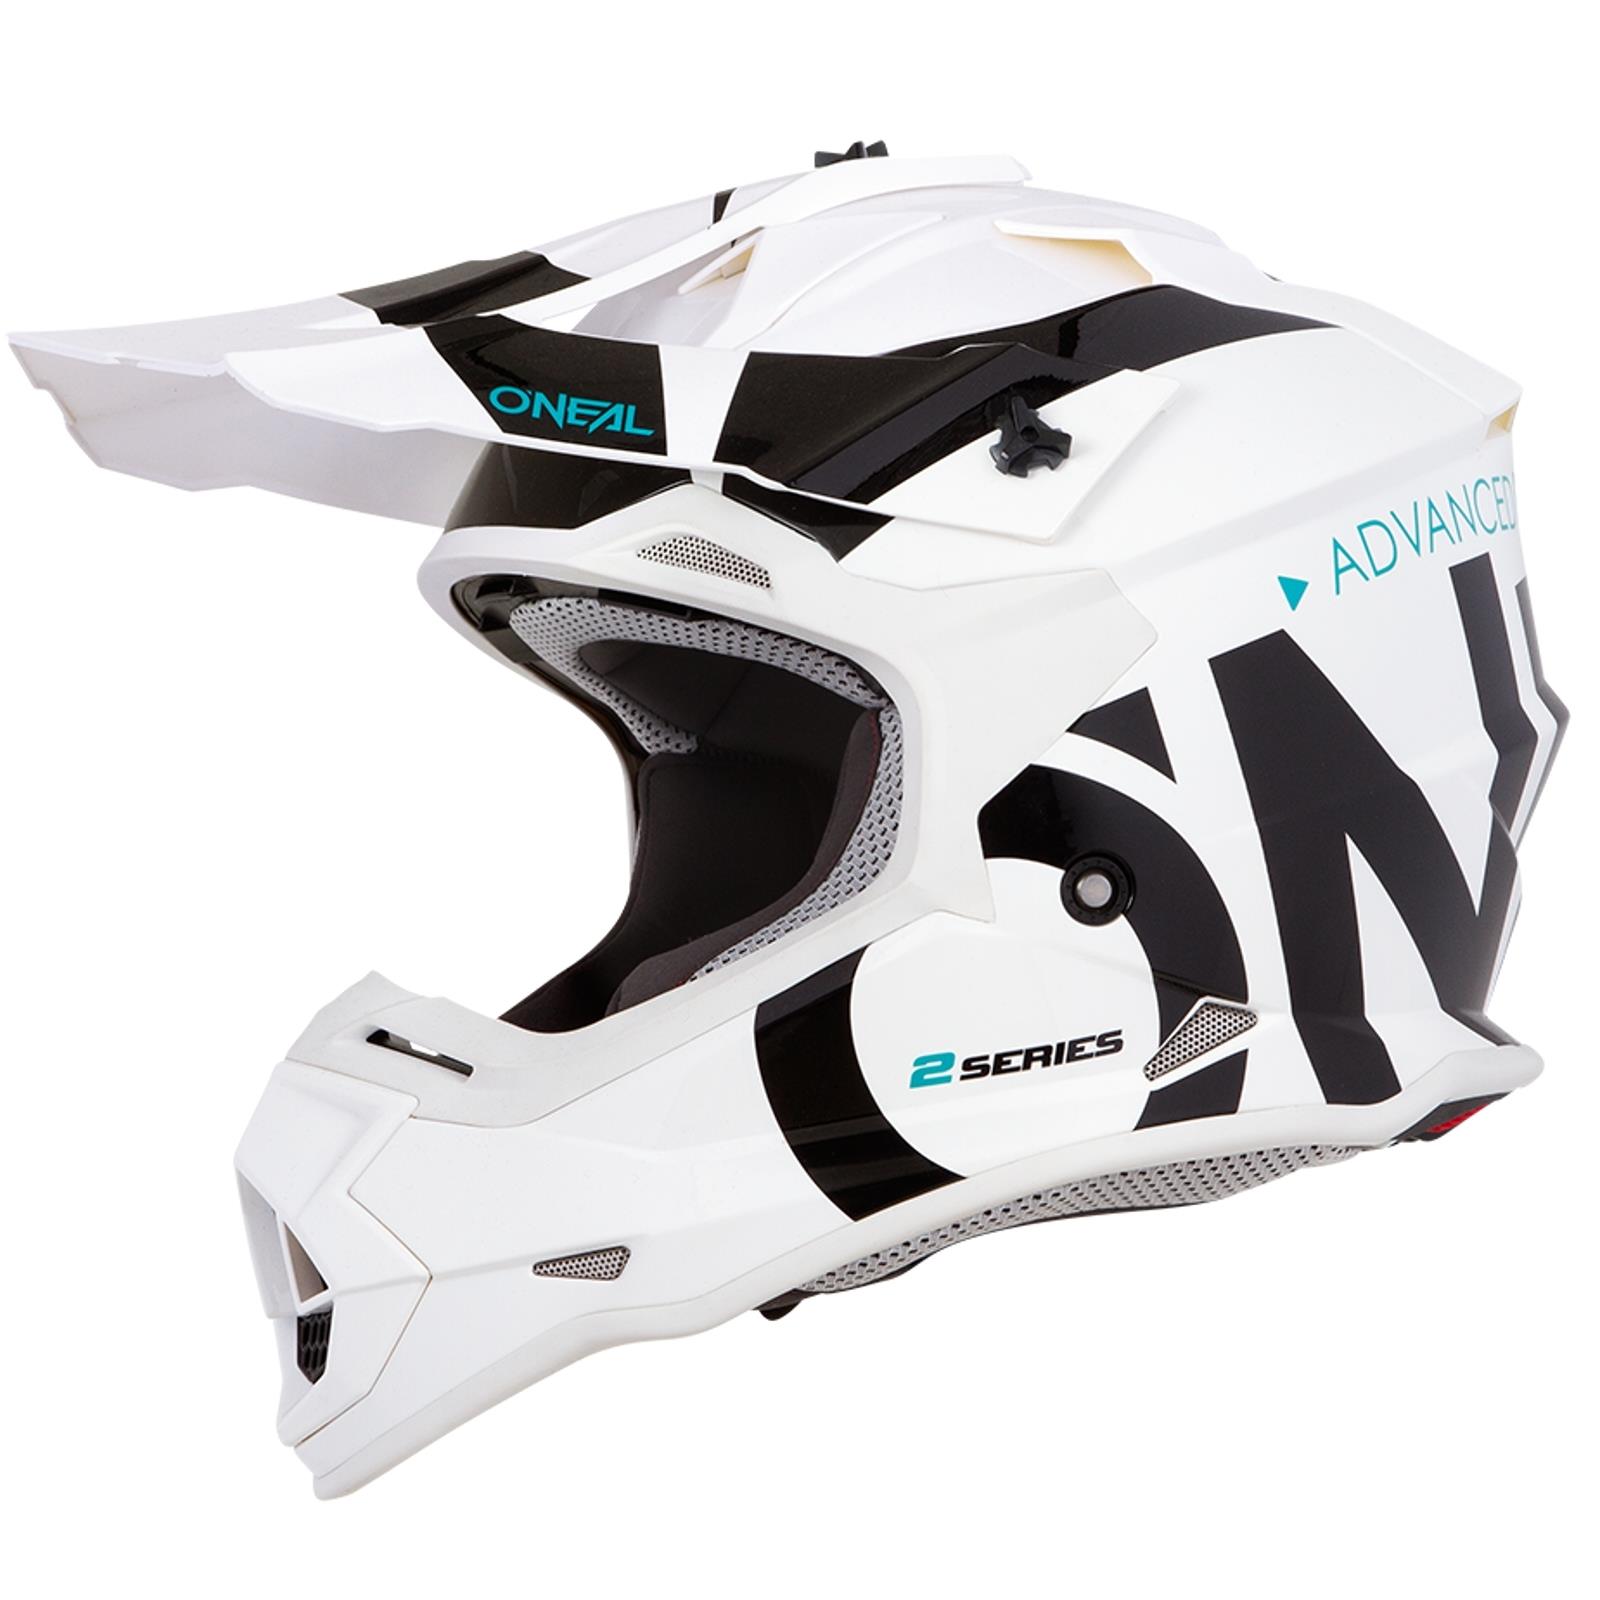 3SRS Helmet Vision Erwachsene Sicherheitsnormen ECE 22.05 Motocross-Helm Schale aus ABS O'NEAL Lüftungsöffnungen für optimale Belüftung und Kühlung Motocross Enduro